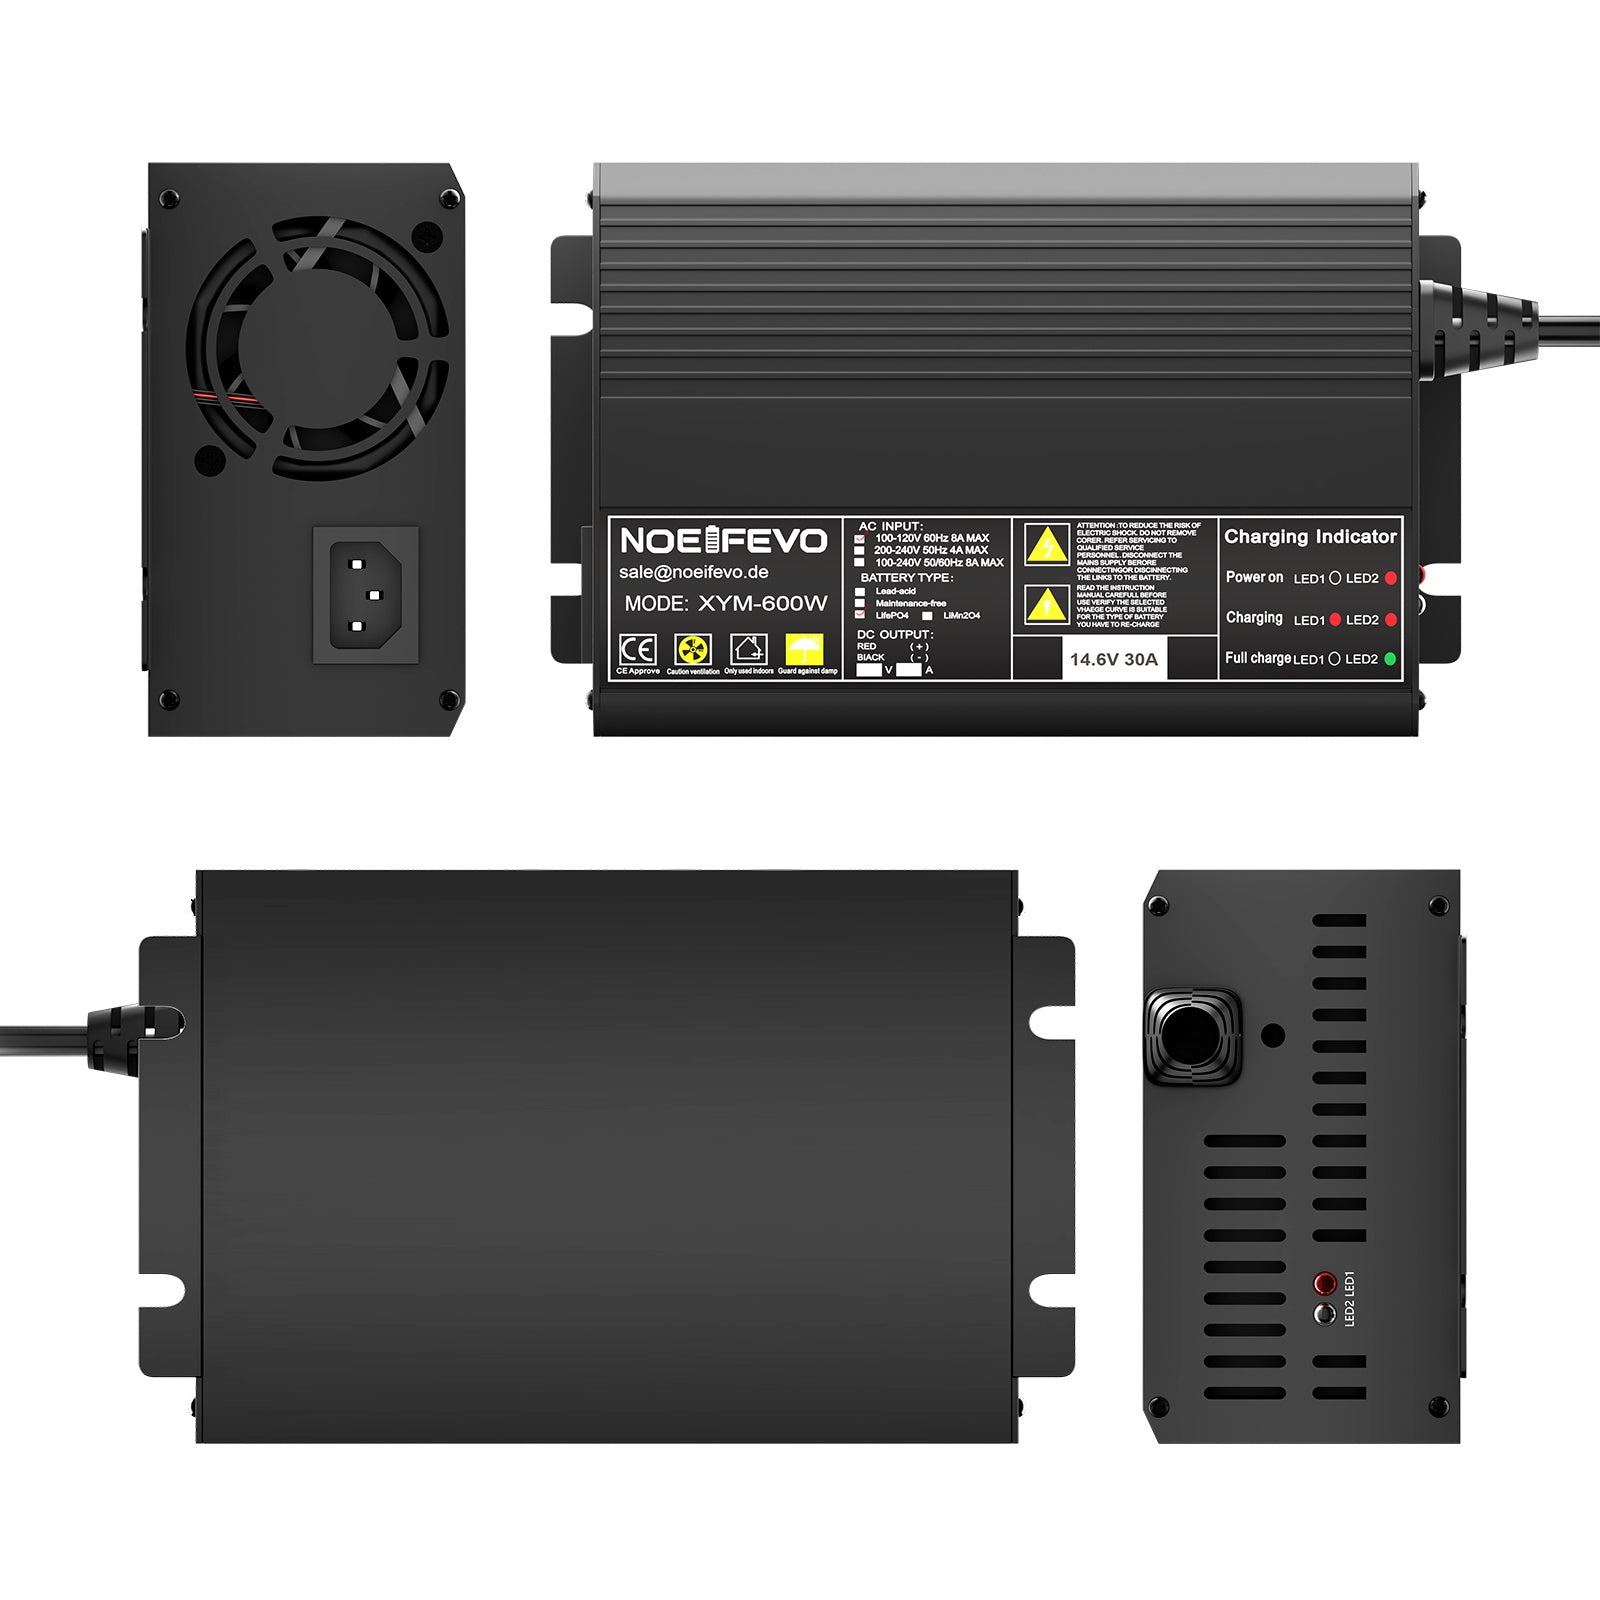 Noeifevo 14.6V 30A LiFePO4 battery charger for 12V 12.8V LFP battery